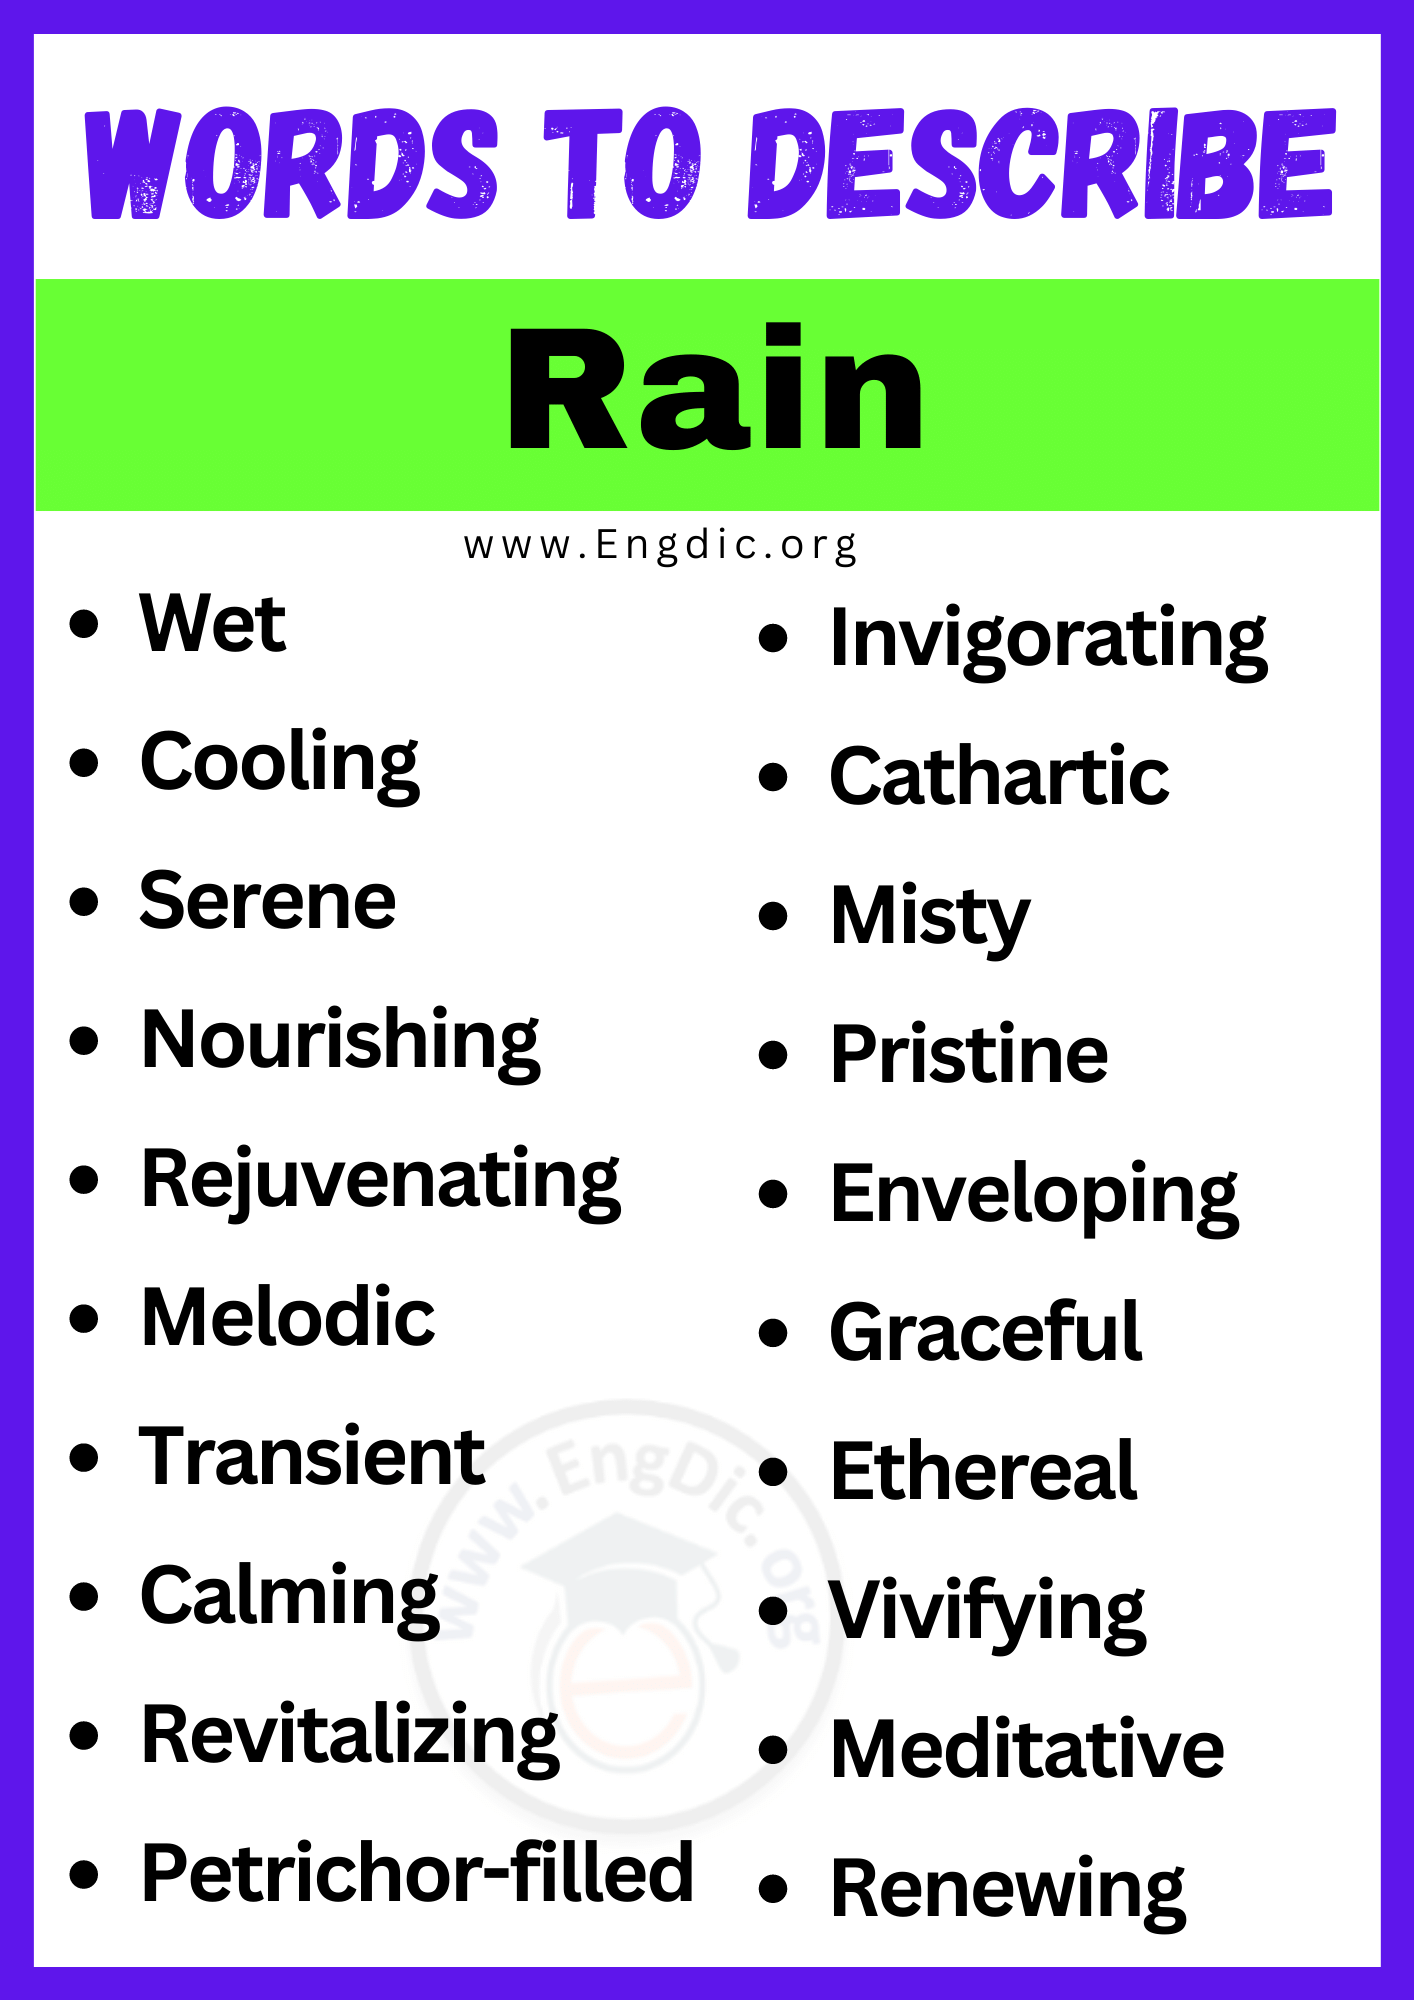 Words to Describe a Rain